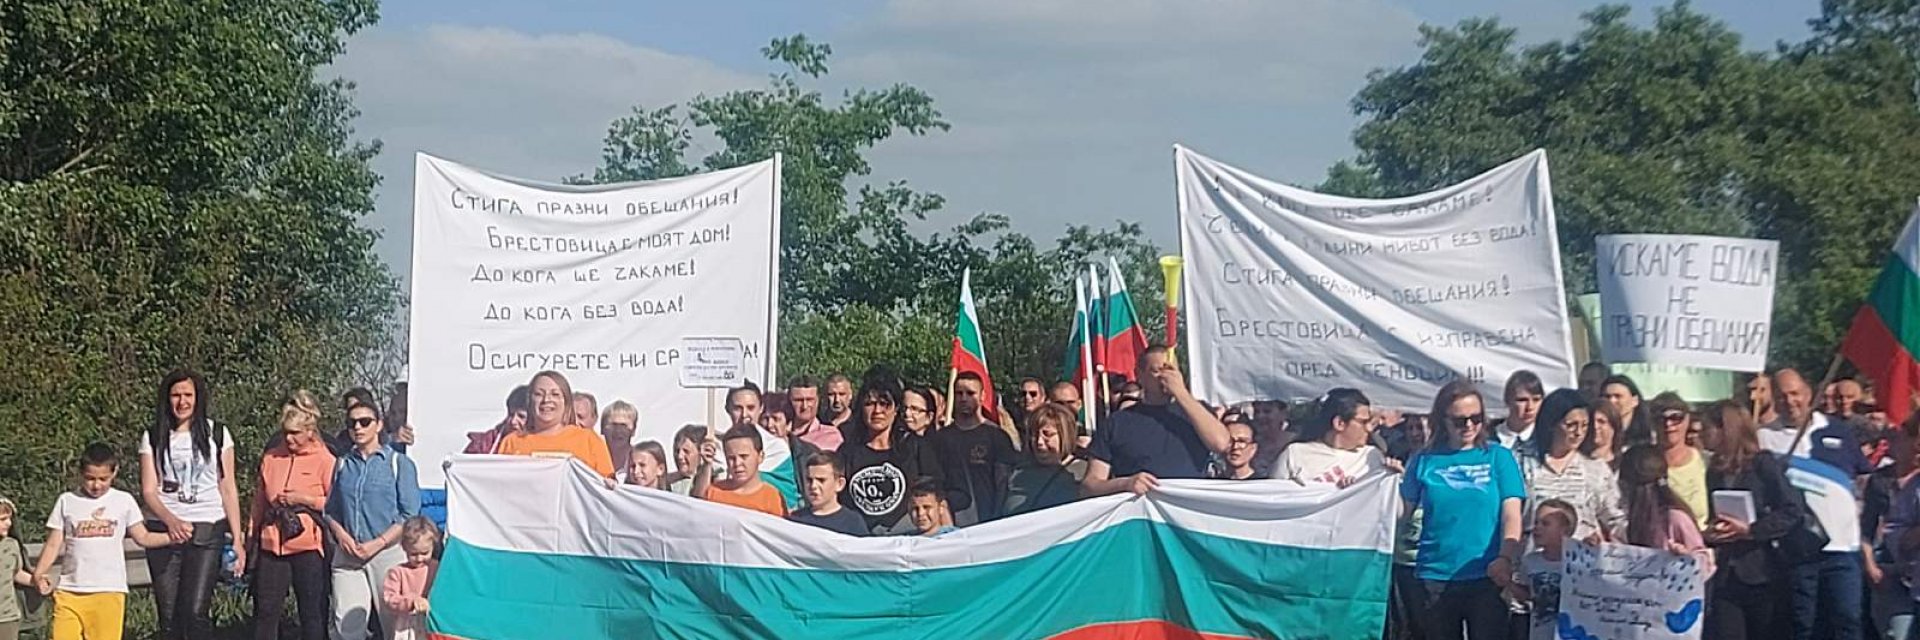 Жители на Брестовица блокираха Околовръстния път на Пловдив с искане за чиста питейна вода